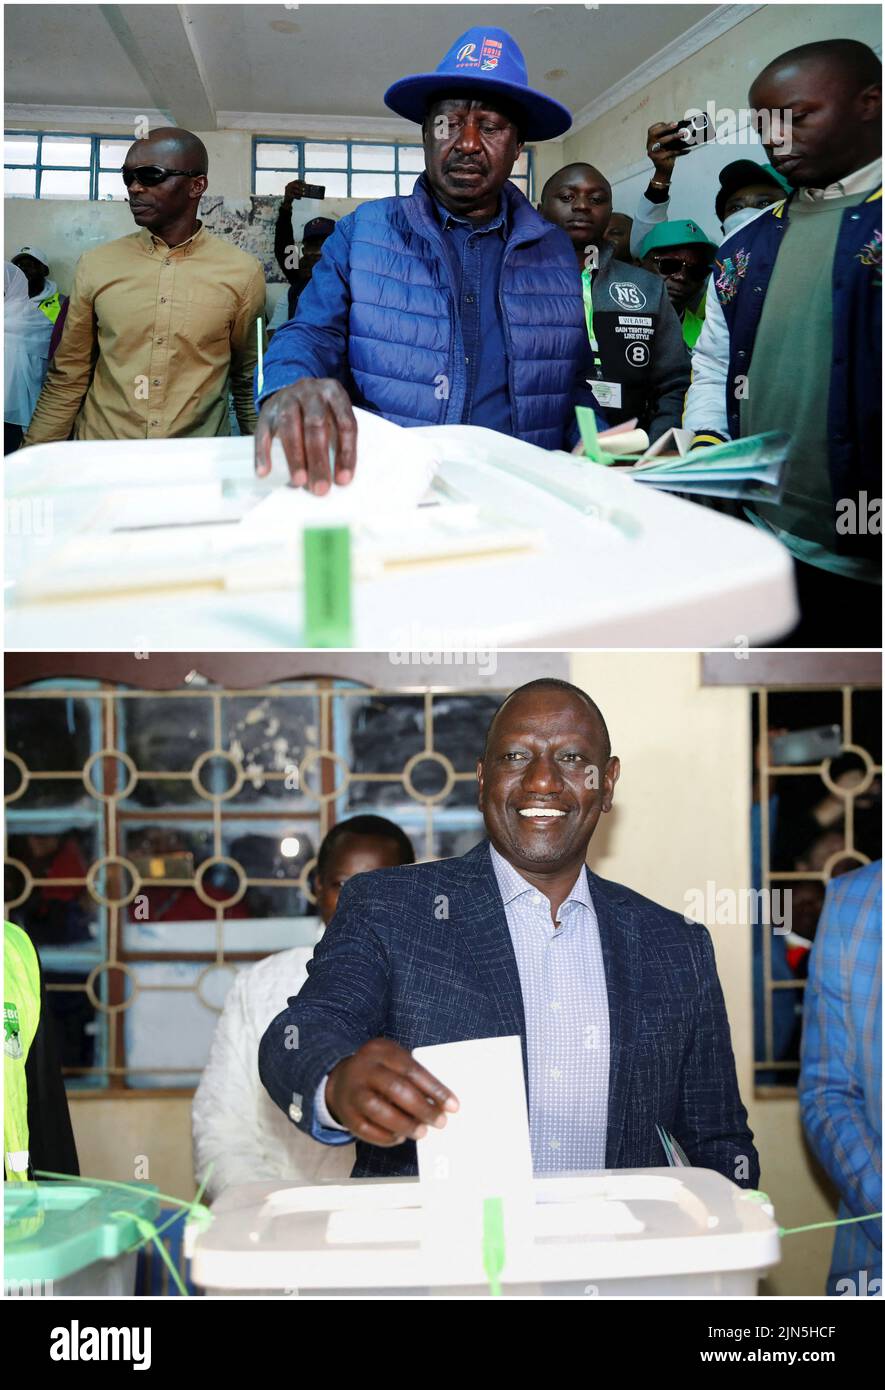 Una imagen combinada muestra al líder de la oposición de Kenia y candidato presidencial Raila Odinga, de la Alianza One Kenya Azimio La Umoja (Declaración de Unidad), que depositó su voto en la Escuela Primaria de Kibera, Fuera de los barrios marginales de Kibera en Nairobi (arriba) y el vicepresidente y candidato presidencial de Kenia William Ruto emitiendo su voto en la Escuela Primaria Kosachei (abajo), durante las elecciones generales en Kenia el 9 de agosto de 2022. REUTERS/Thomas Mukoya/Baz Ratner Foto de stock